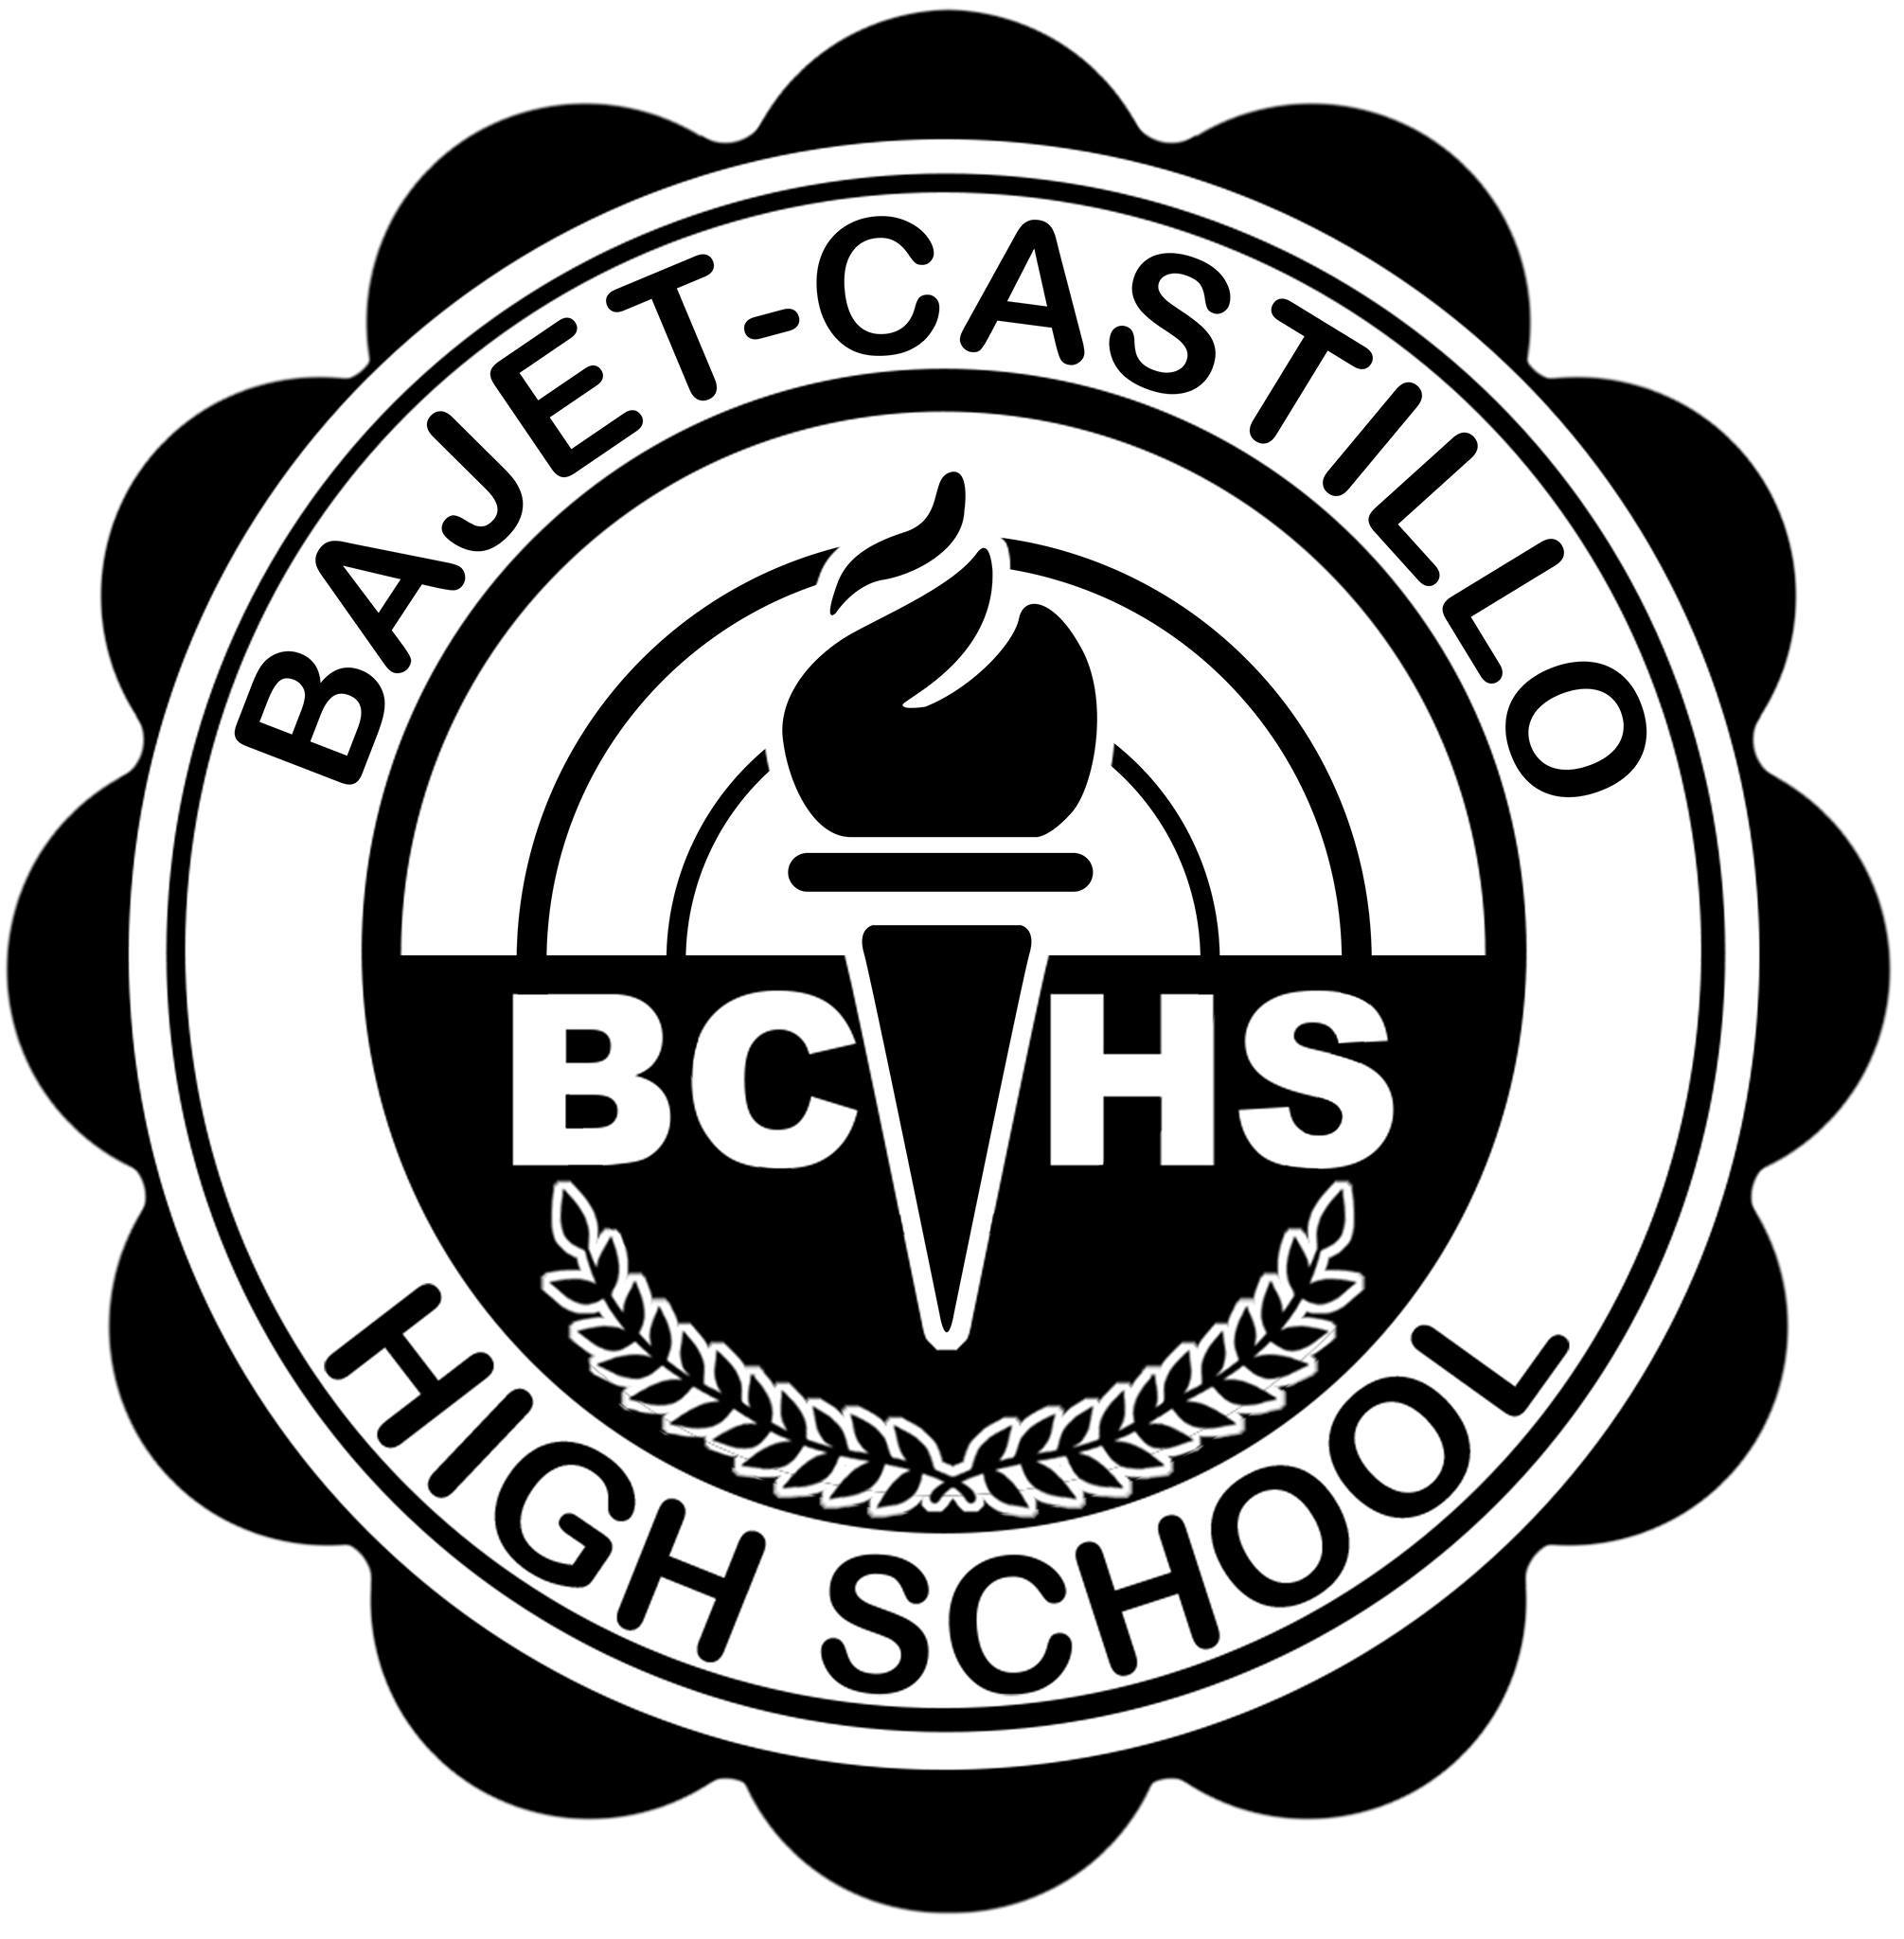 Bajet Castillo High School校徽